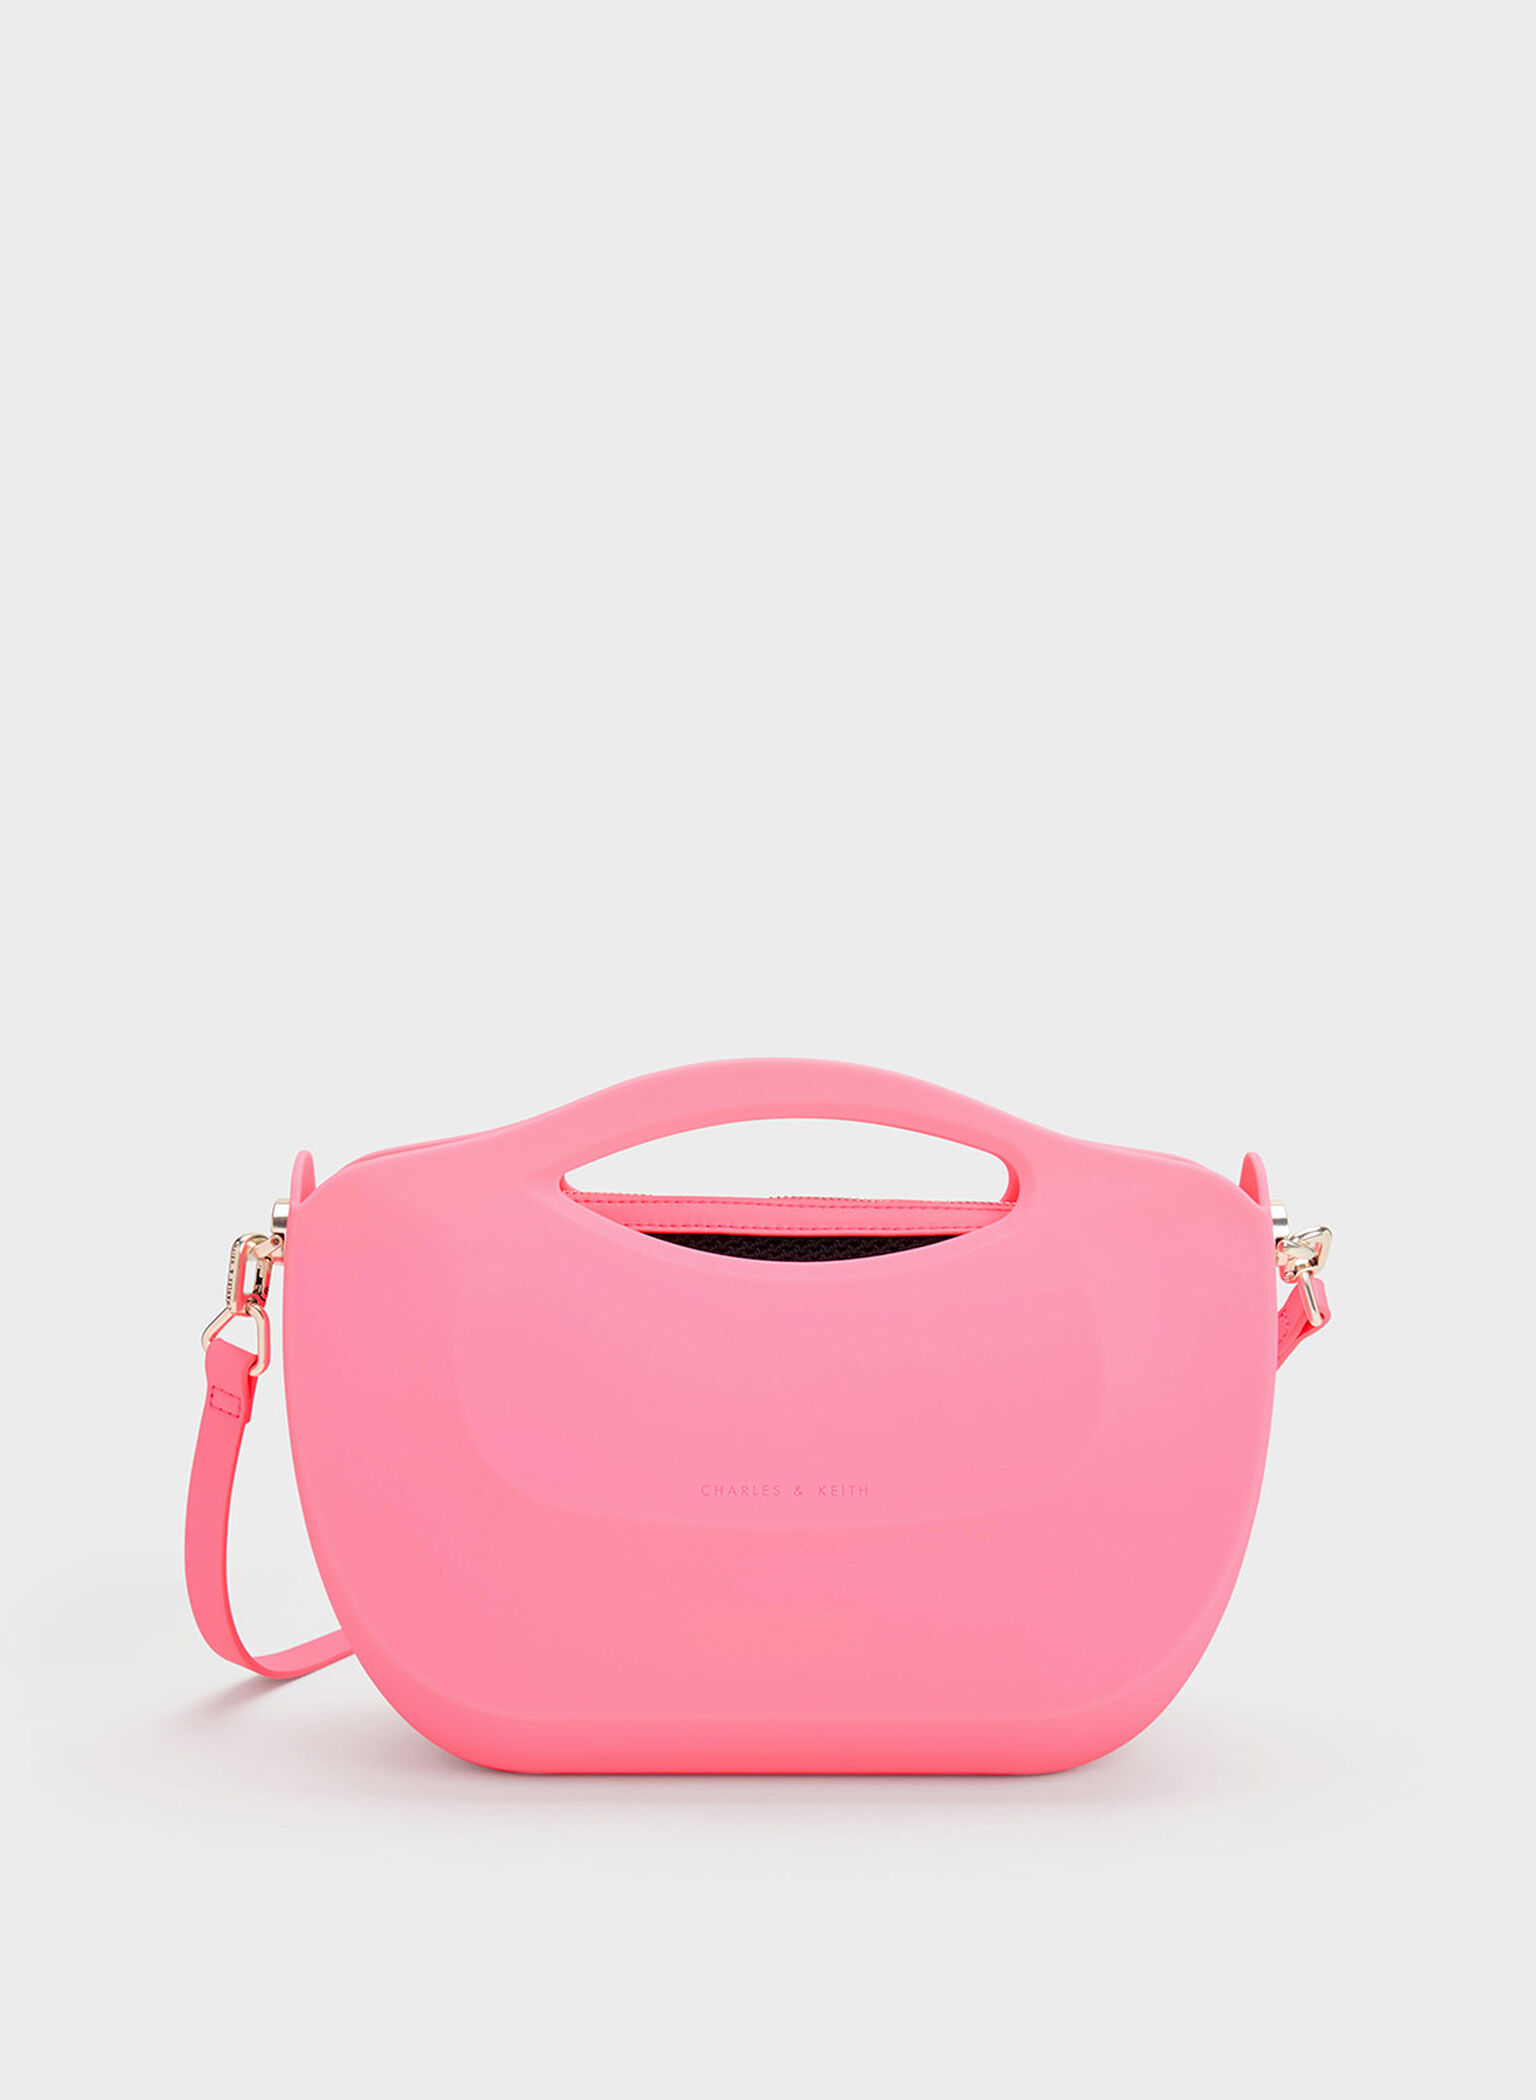 Cocoon handbag